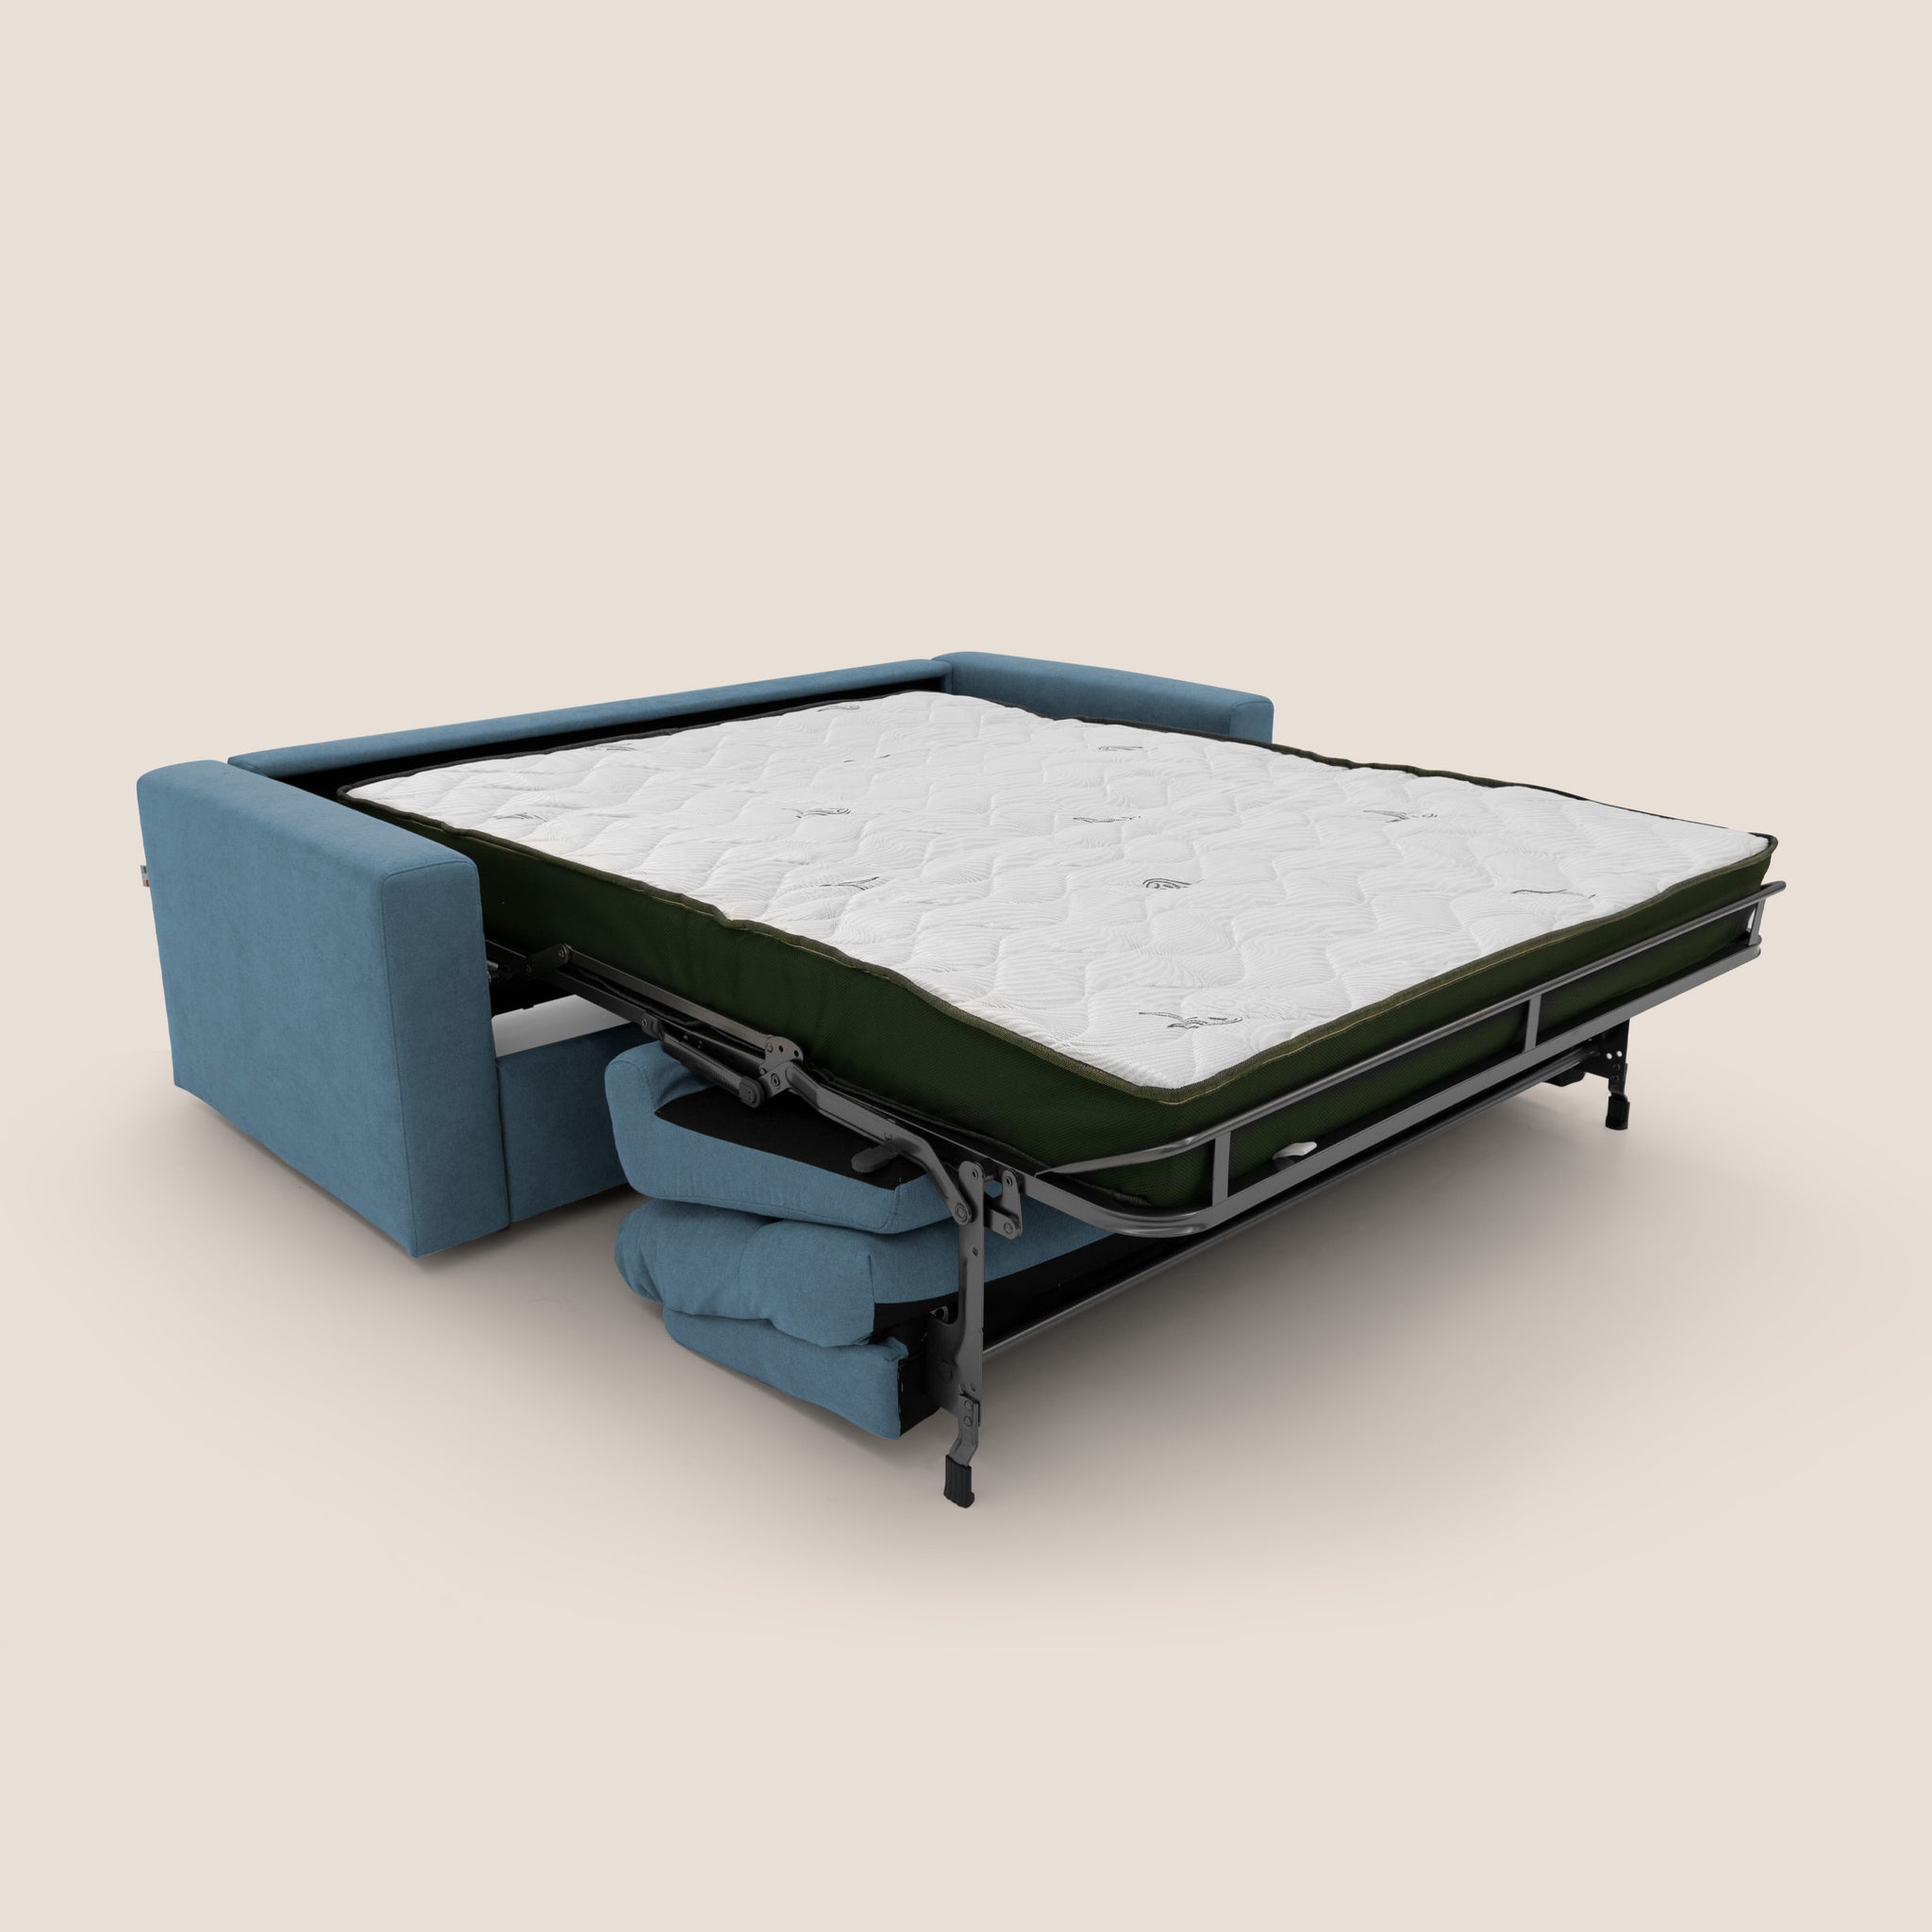 Paloma divano letto con materasso alto 18 cm con Aloe Vera in tessuto impermeabile